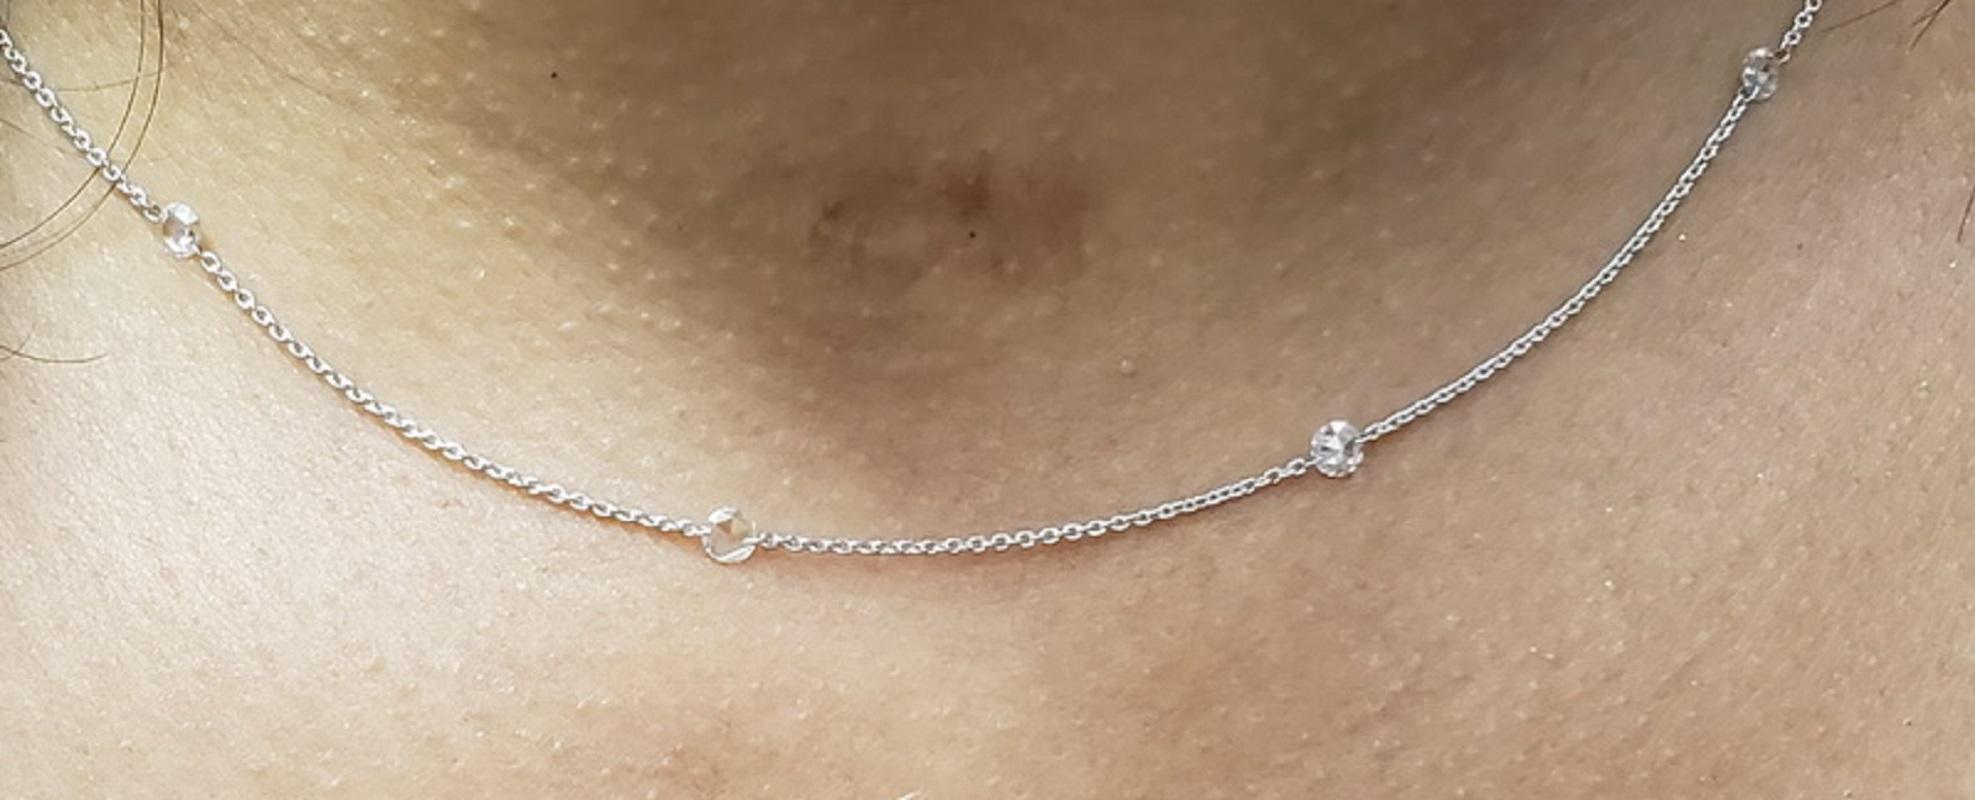 PANIM 1 Carat Rosecut Diamond Circles Necklace in 18 Karat White Gold 2